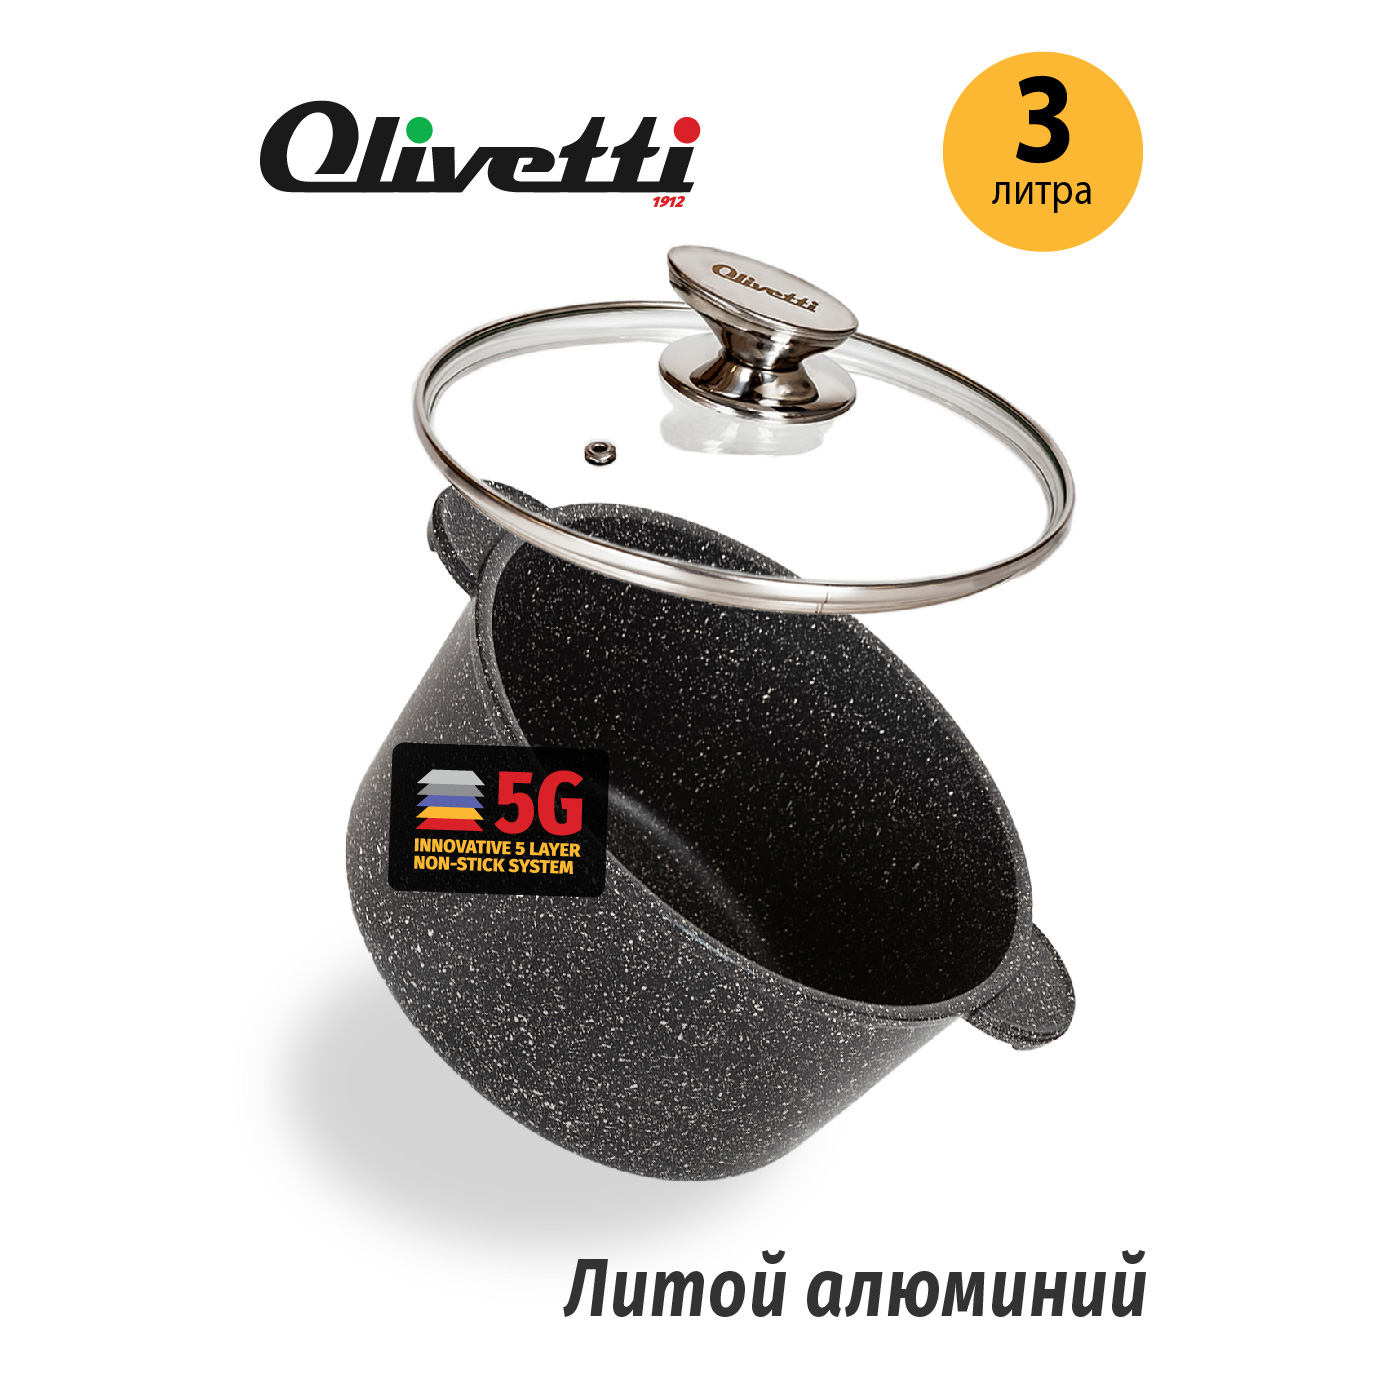 Картинка Алюминиевая кастрюля Olivetti CS720 20 см/3 л по разумной цене купить в интернет магазине mall.su